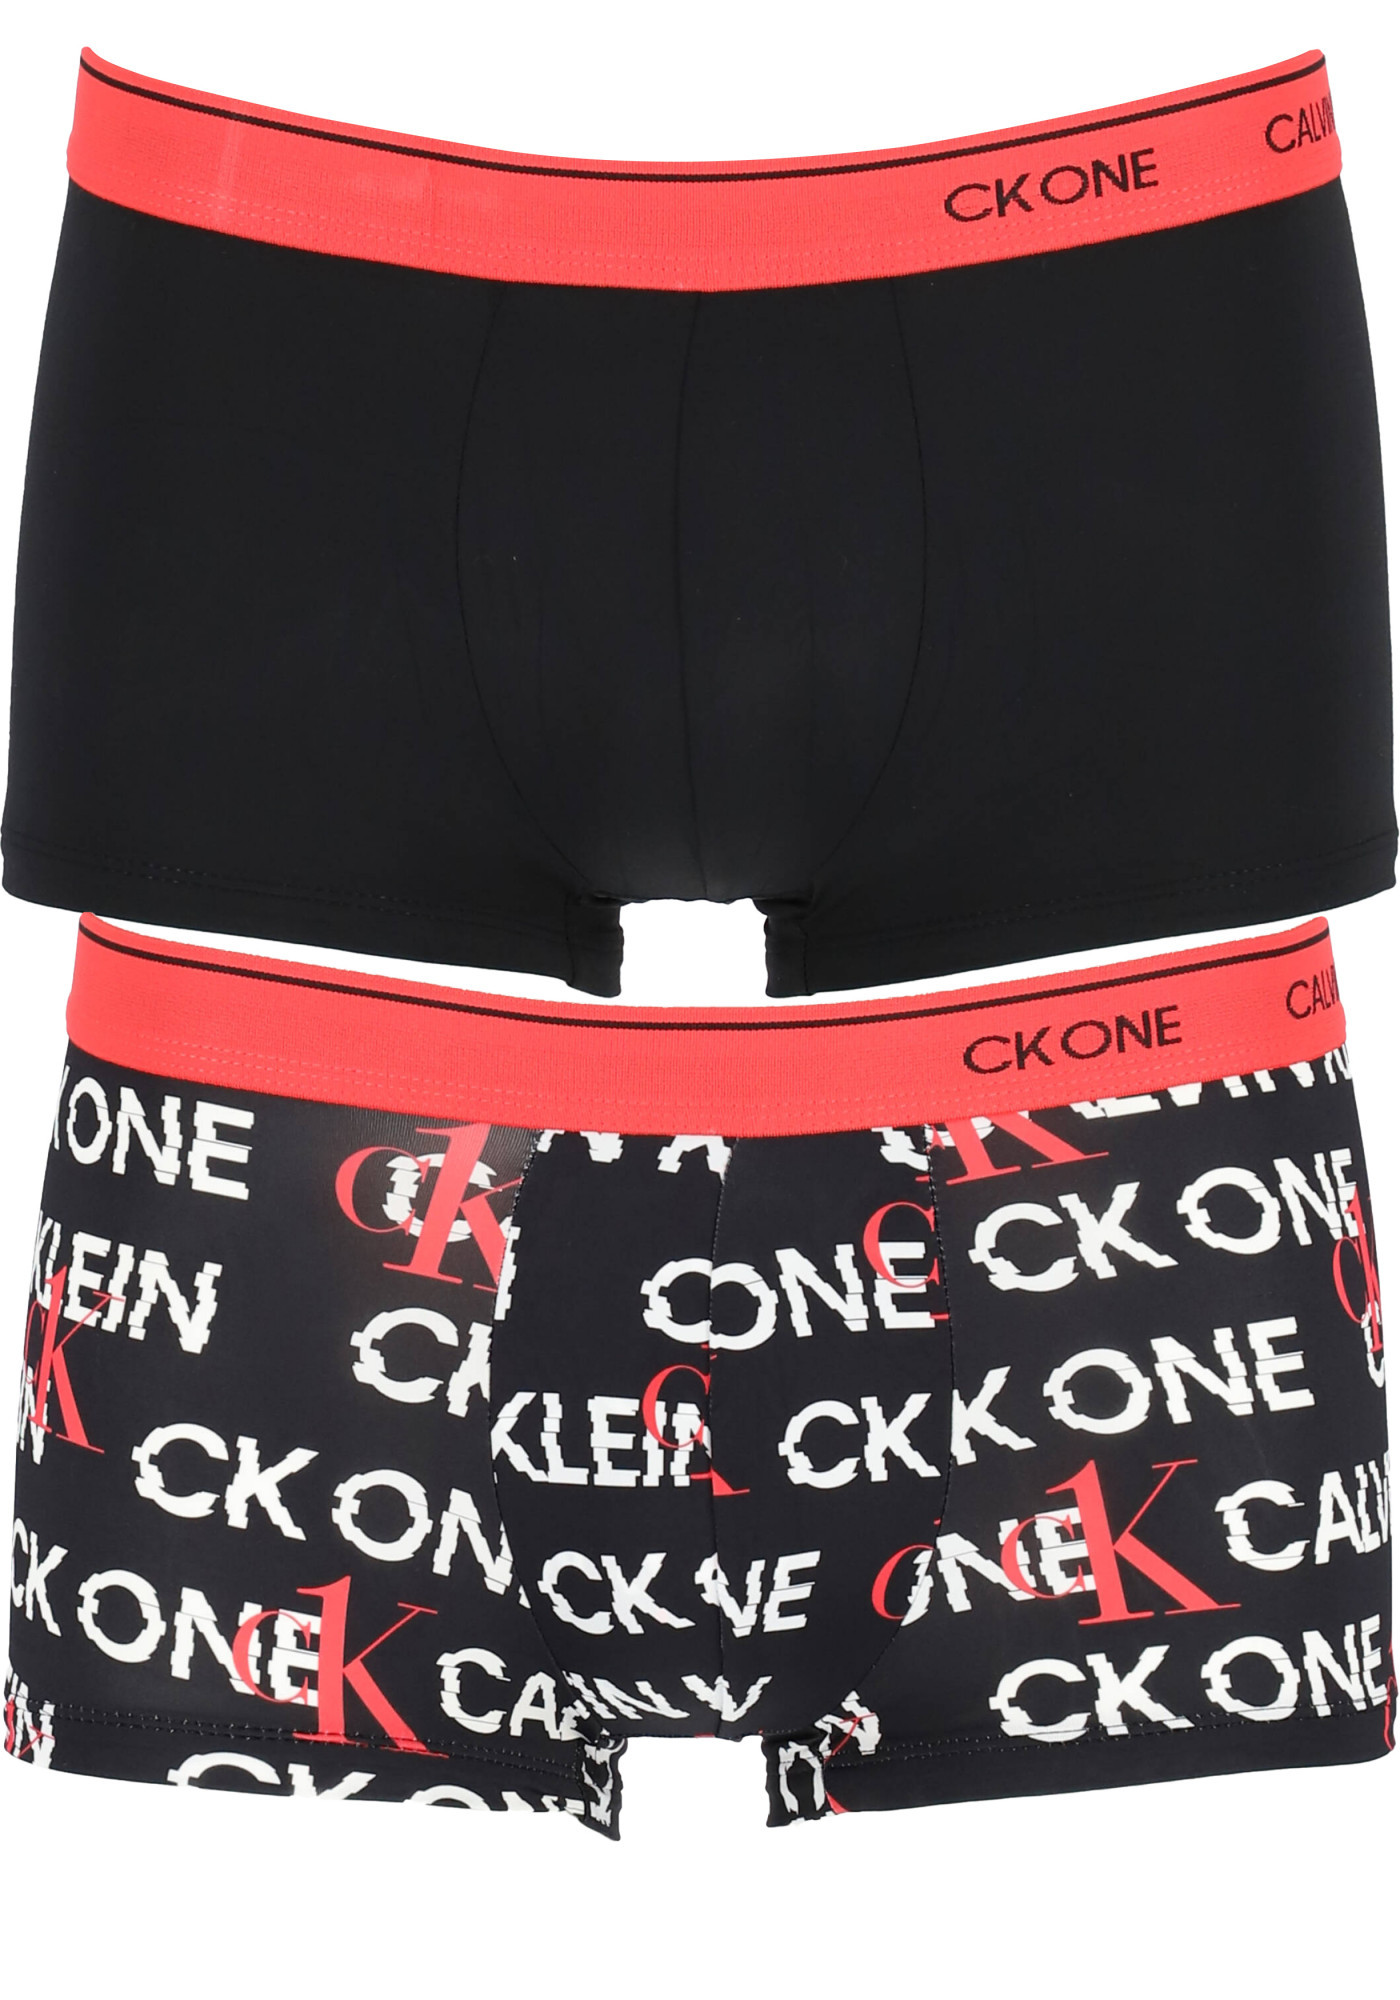 Pánské trenýrky 2pack model 17058019 - Calvin Klein Velikost: XL, Barvy: černá s červenou